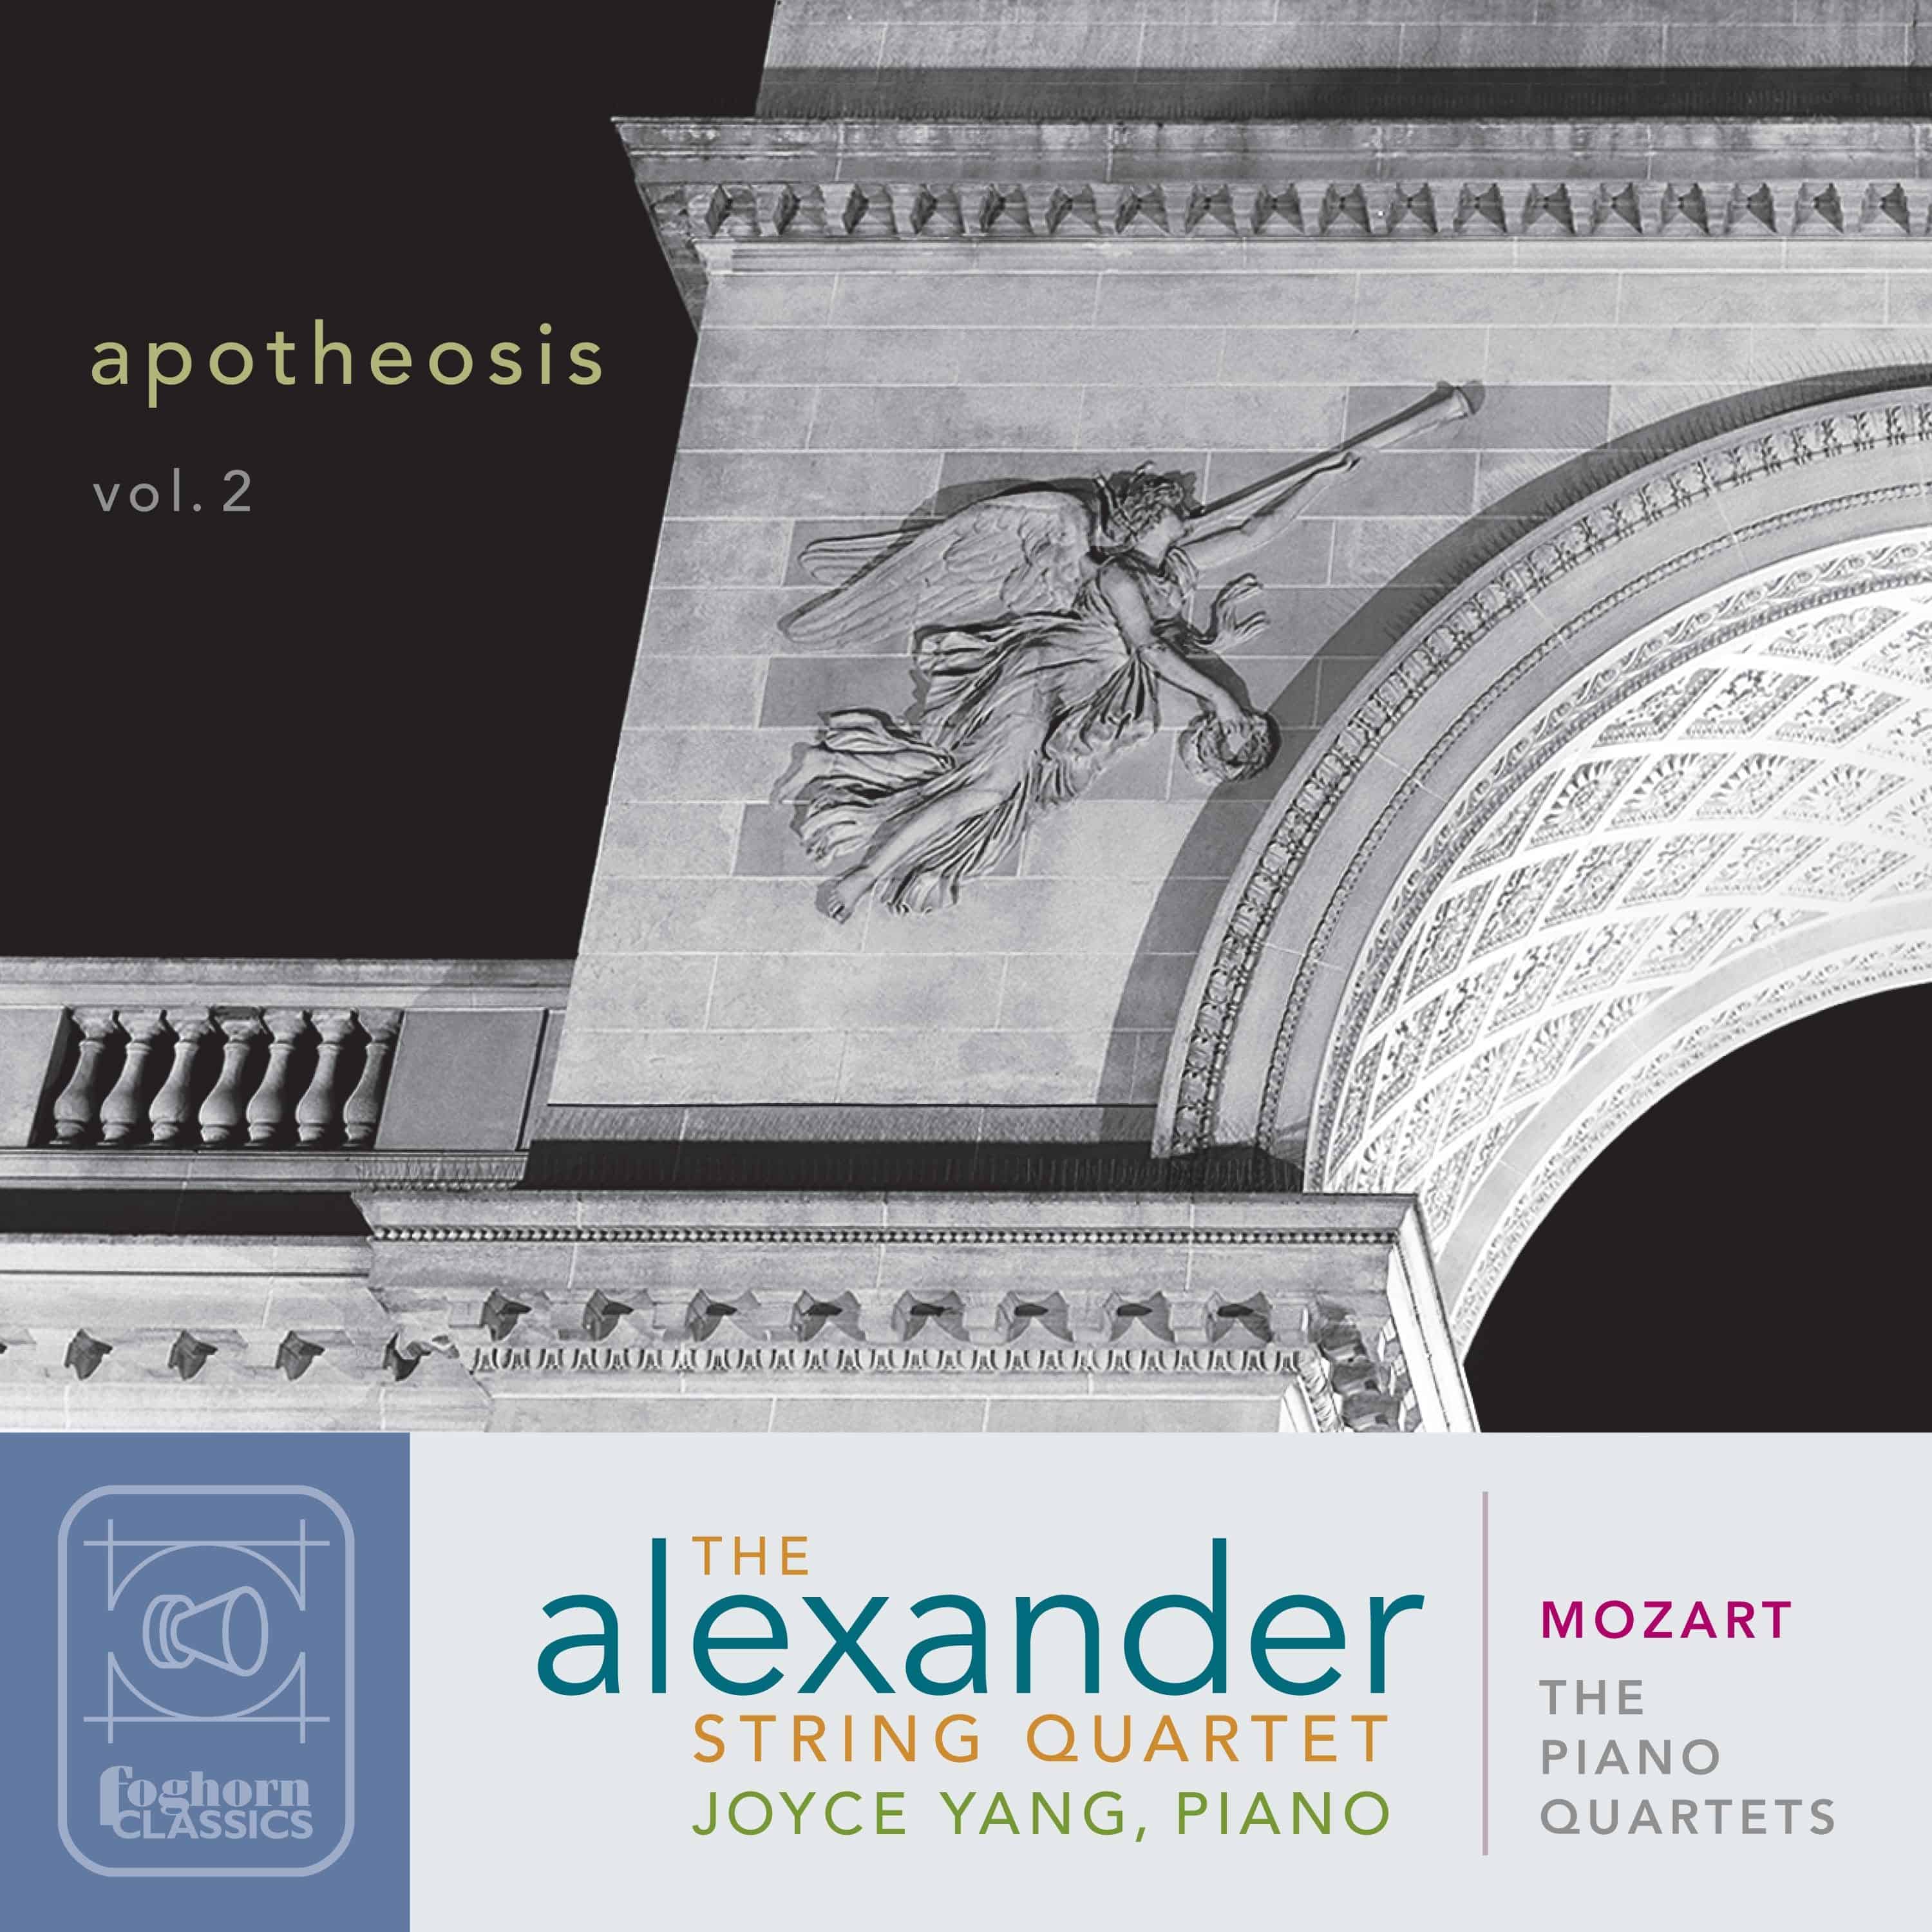 Mozart: The Piano Quartets - Apotheosis, Vol. 2